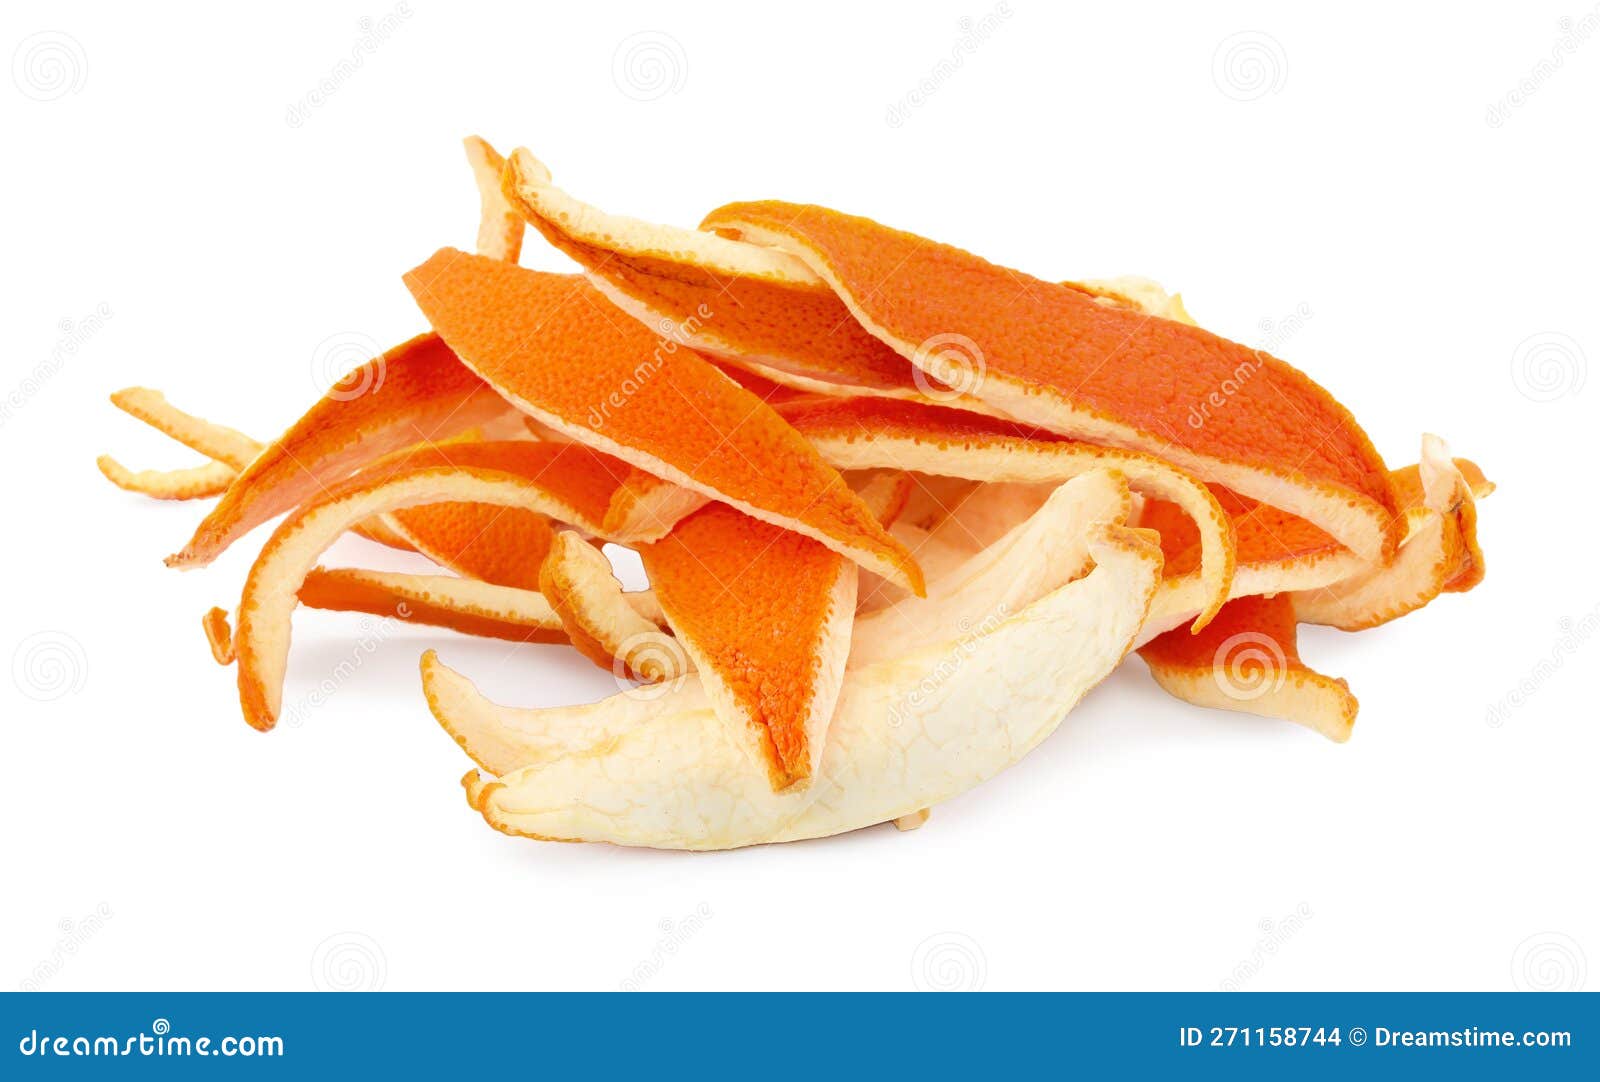 Pile Of Dry Orange Peels Isolated On White Stock Photo Image Of